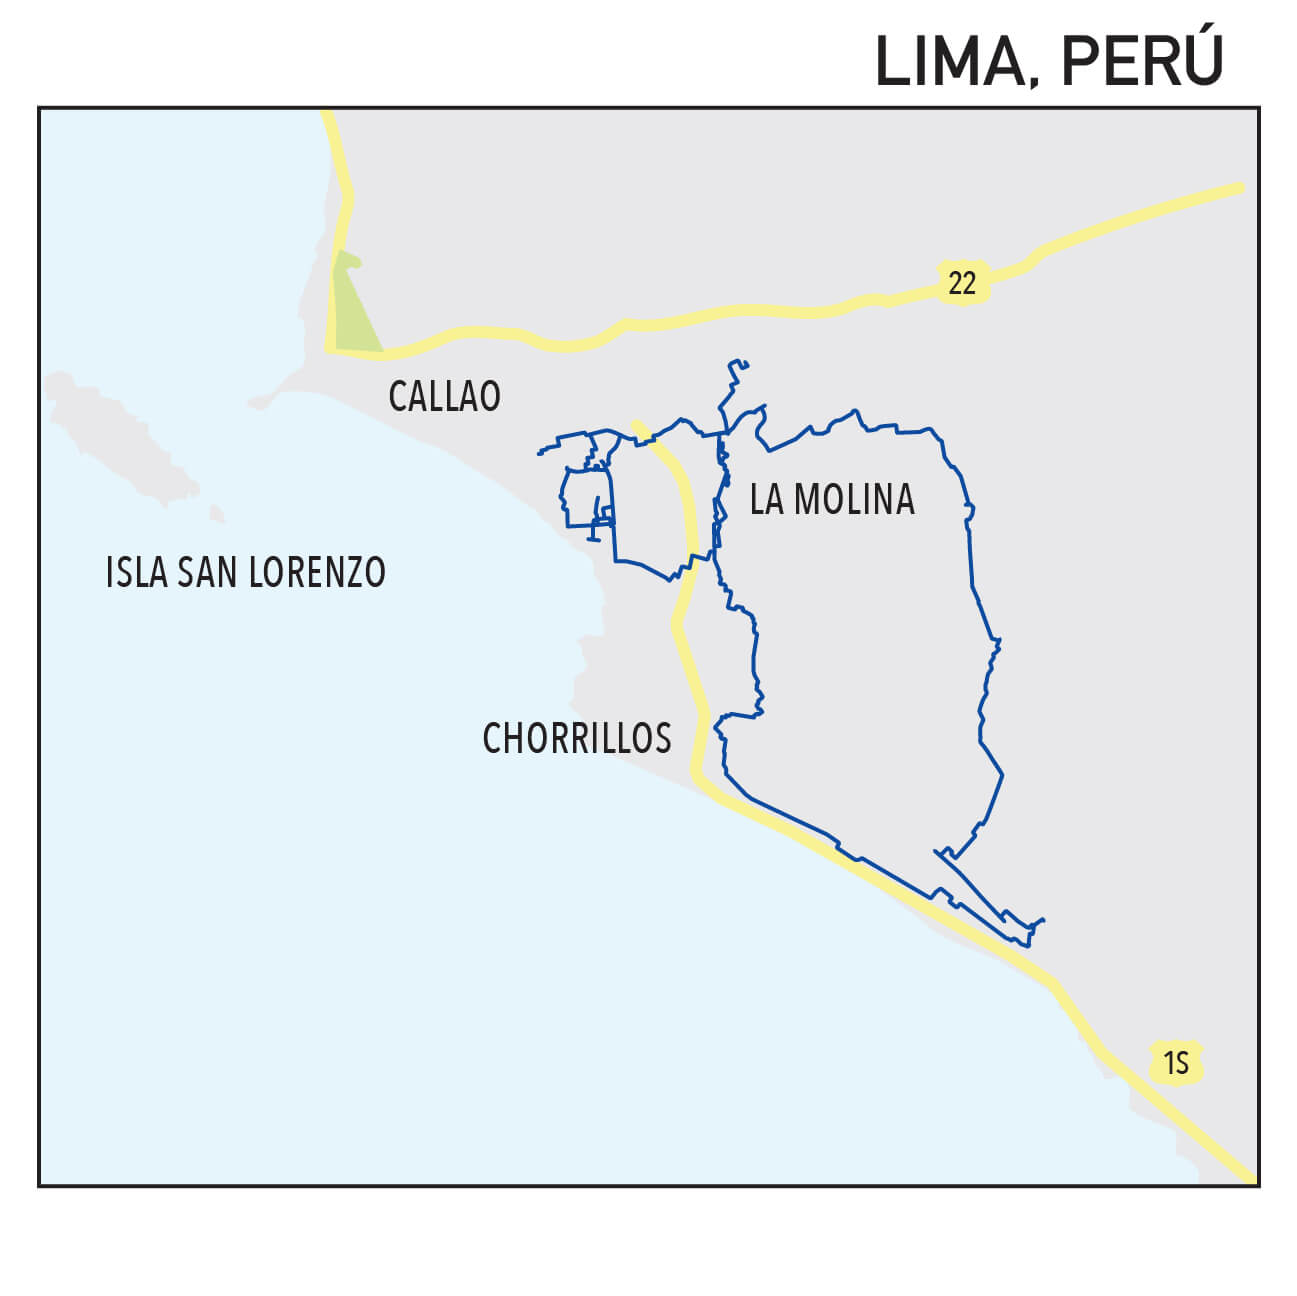 Capillarity Perú map Ufinet